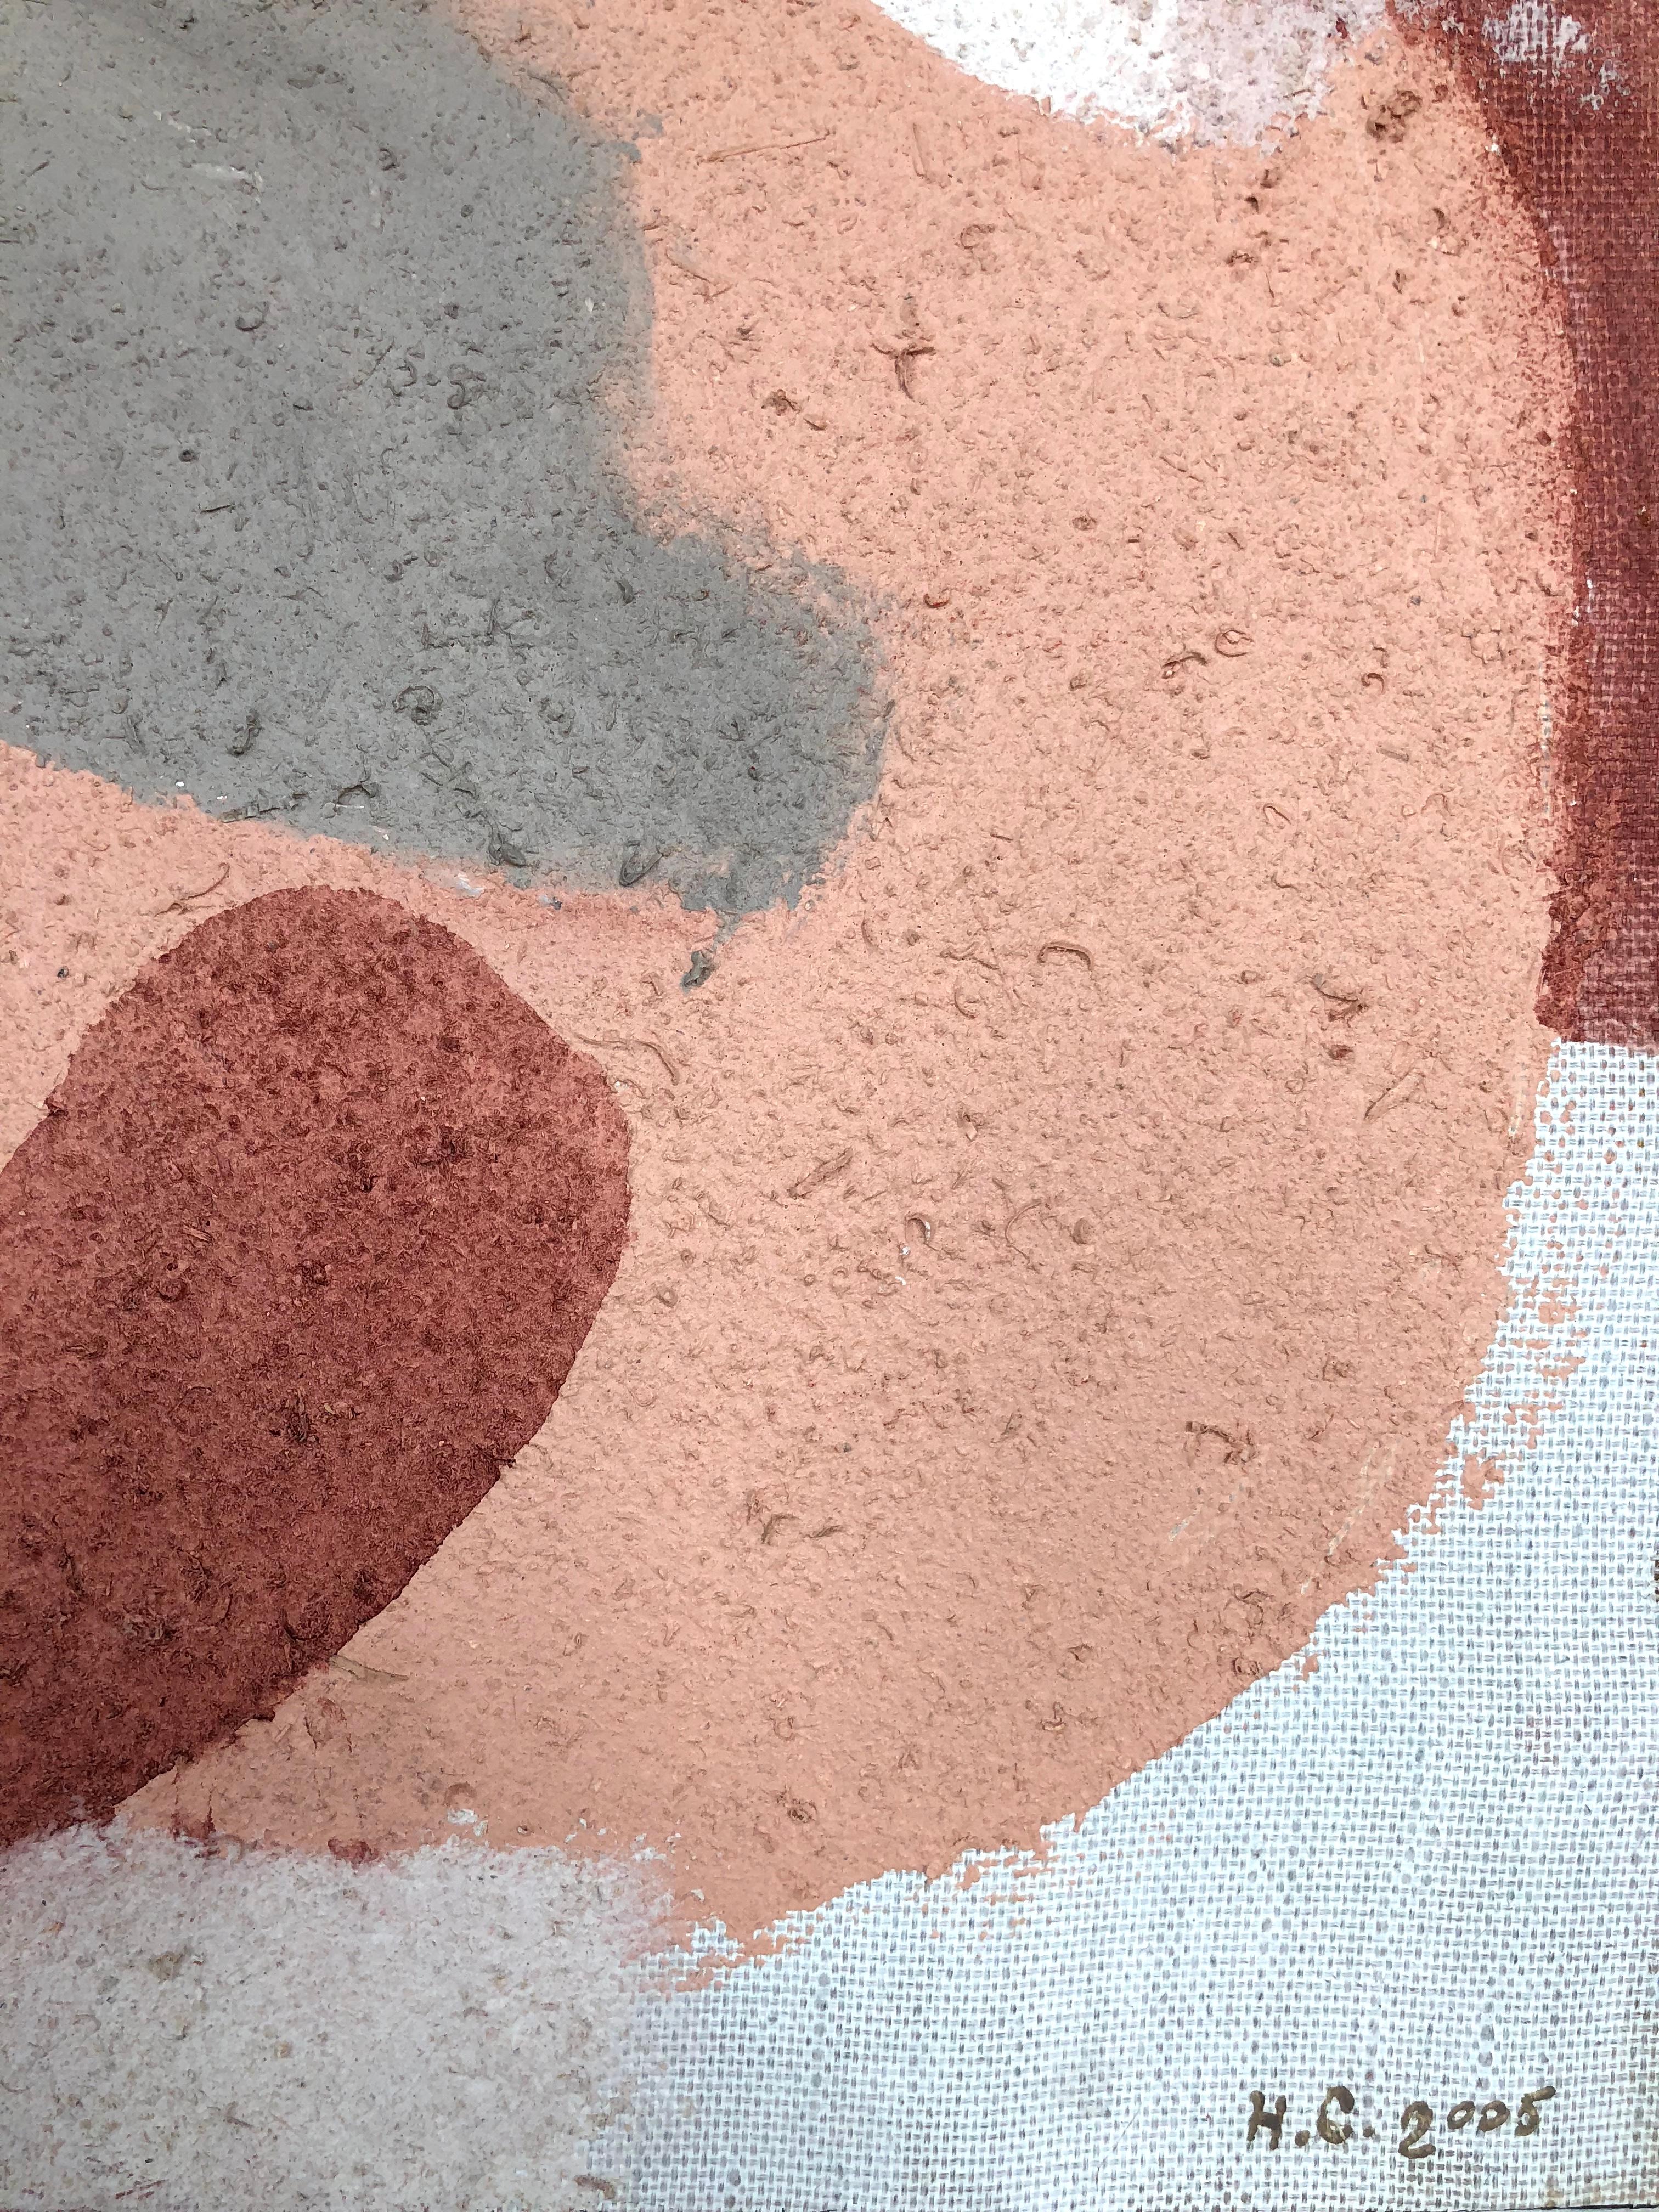 Komposition XXI - Ein abstraktes, quadratisches Gemälde in hellen, grauen, pfirsichfarbenen und bordeauxroten Farben. Der Autor hat Öl auf Leinwand verwendet und Sägespäne mit Alabaster und Sand vermischt, wodurch eine besondere Textur